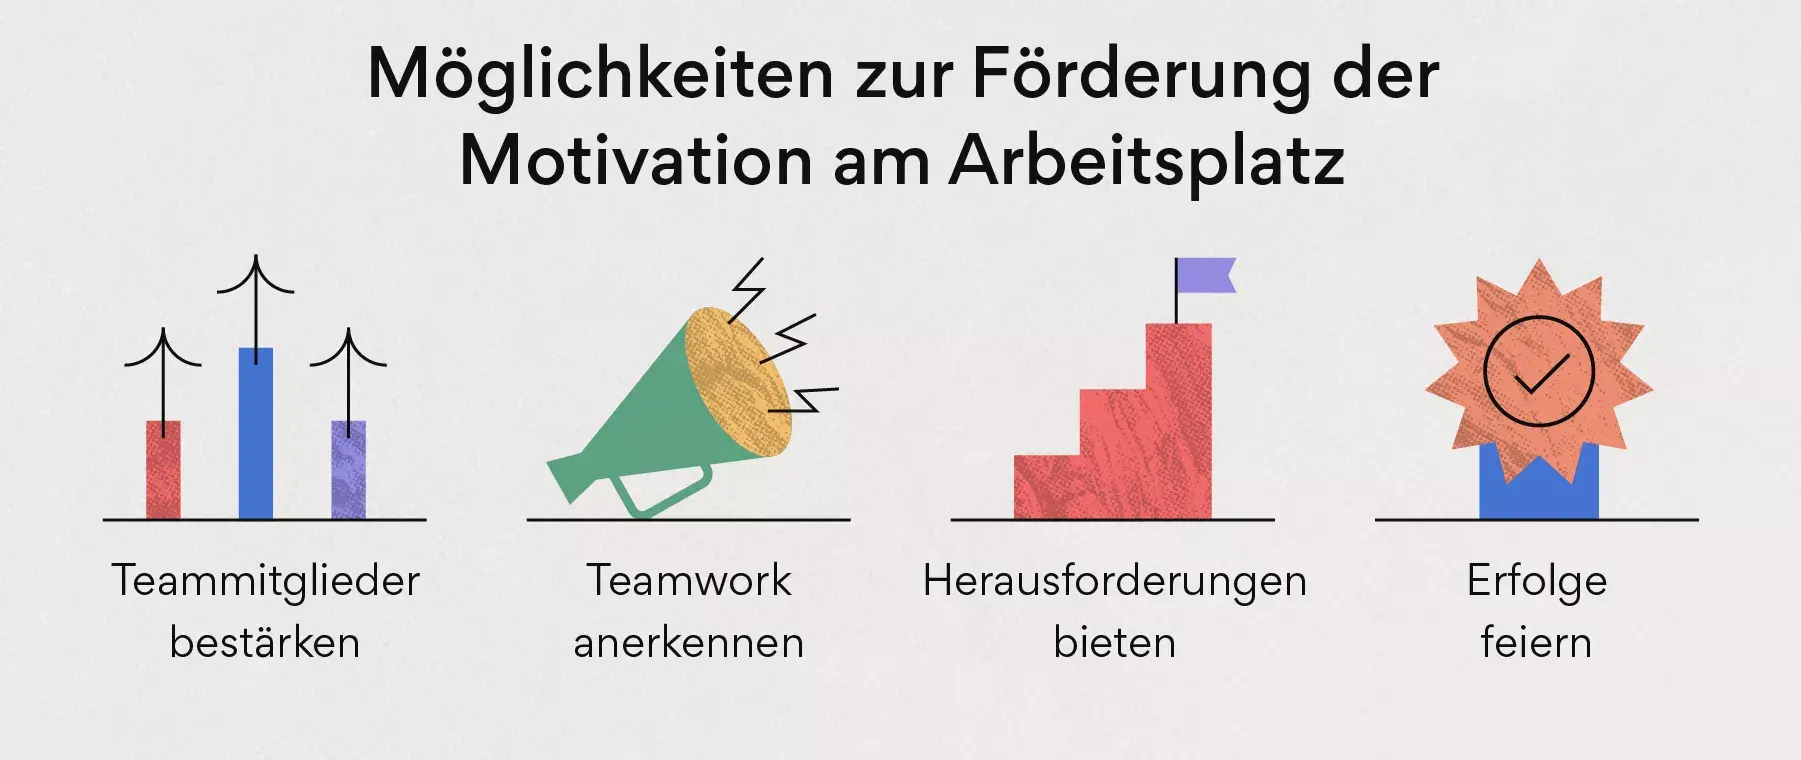 Möglichkeiten zur Förderung der Motivation am Arbeitsplatz